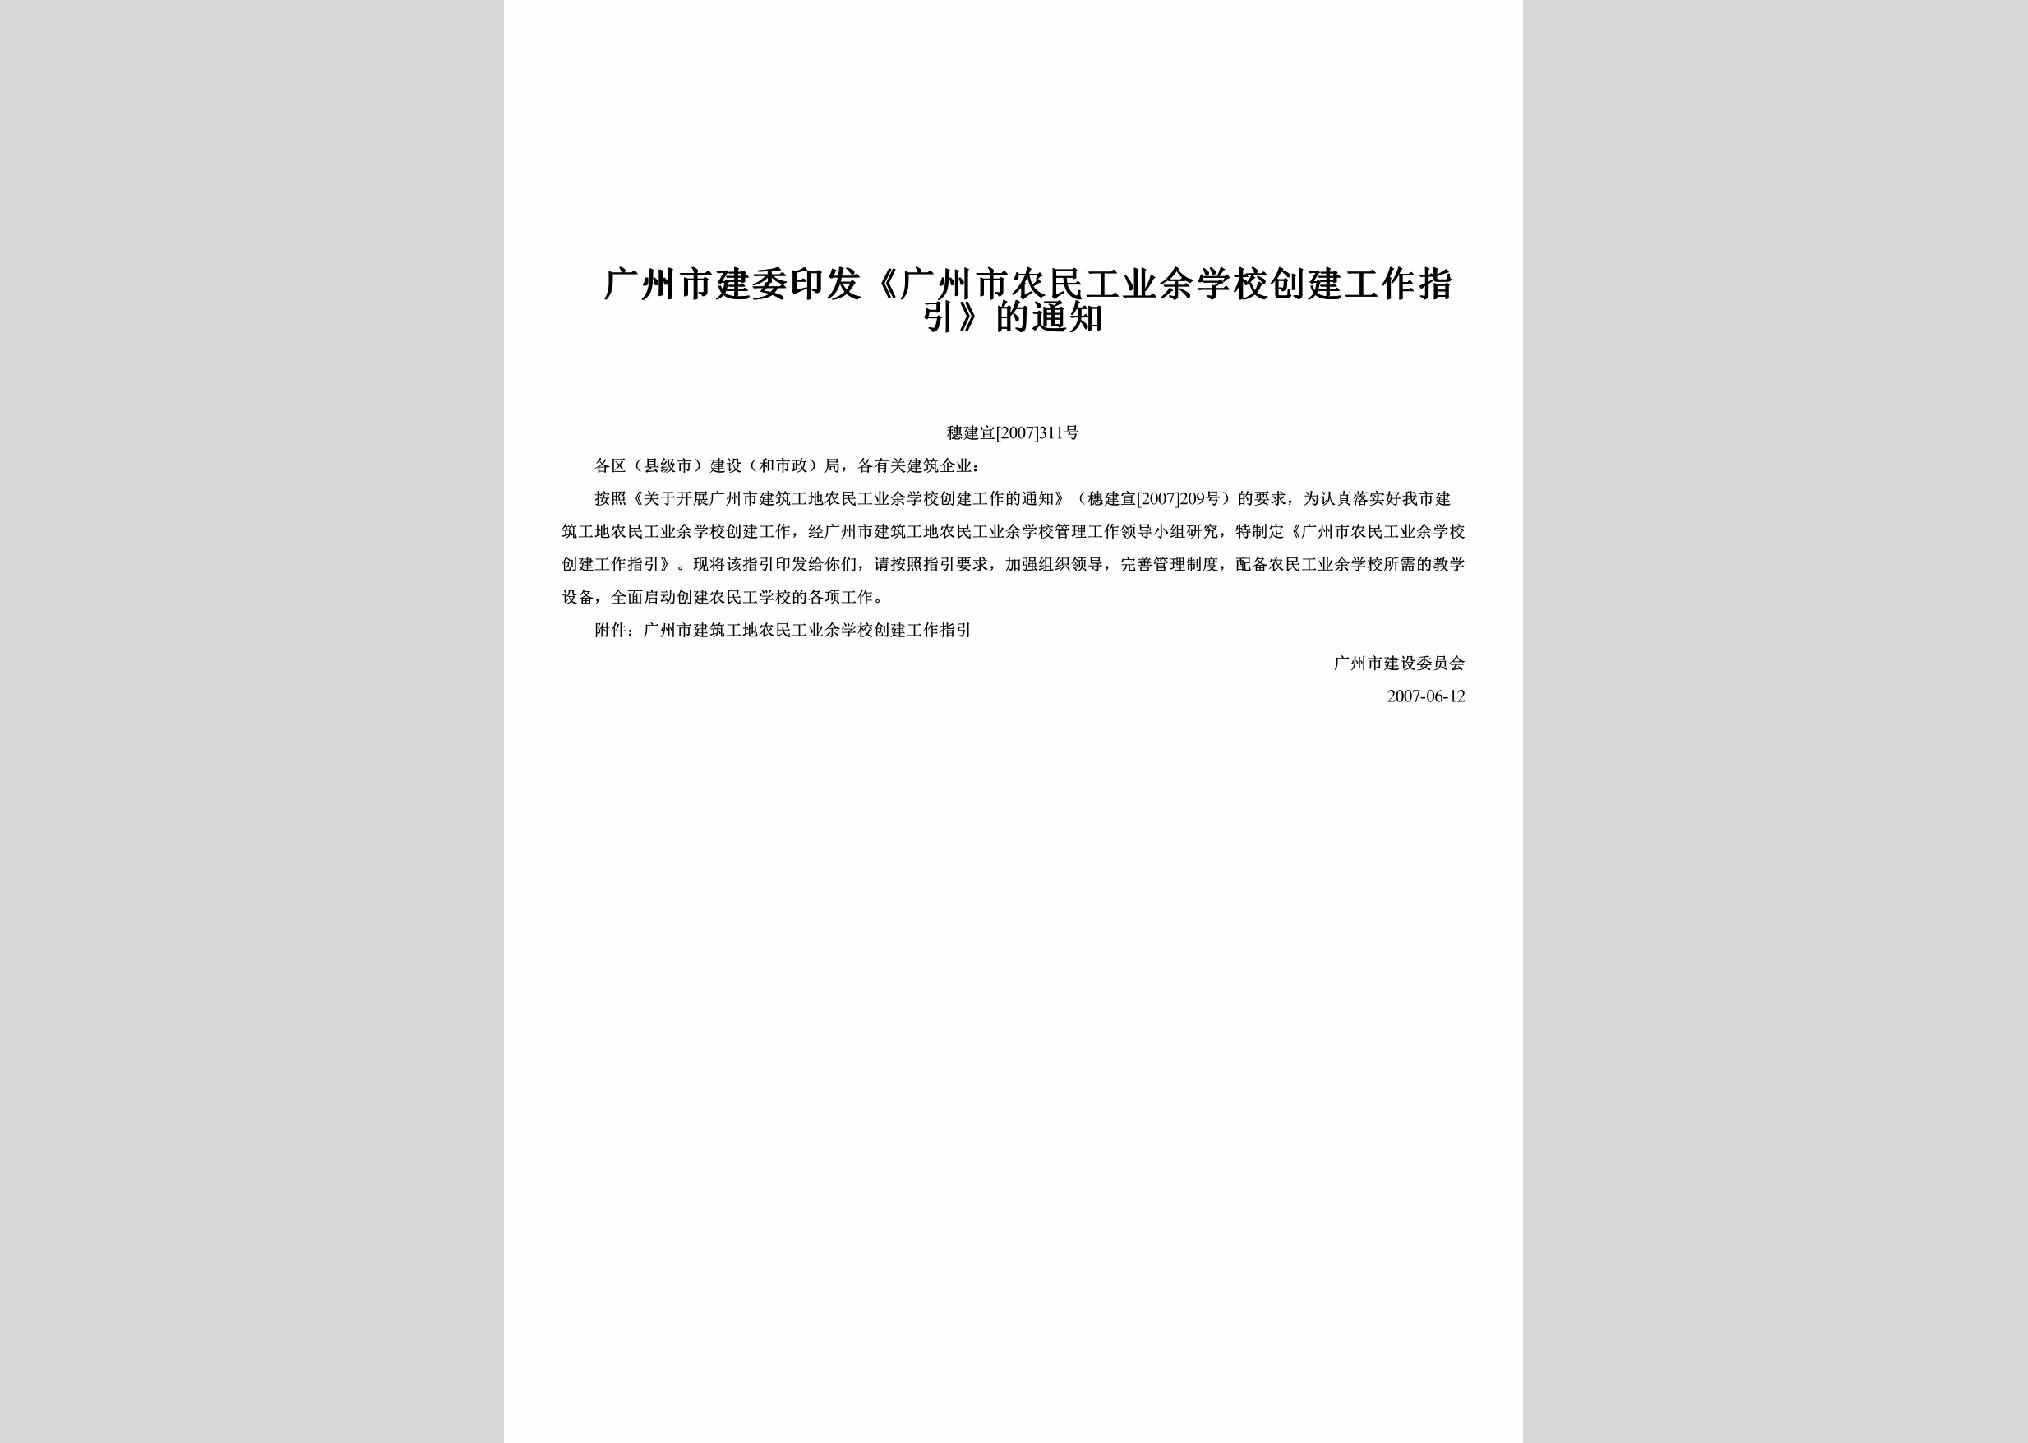 穗建宣[2007]311号：印发《广州市农民工业余学校创建工作指引》的通知